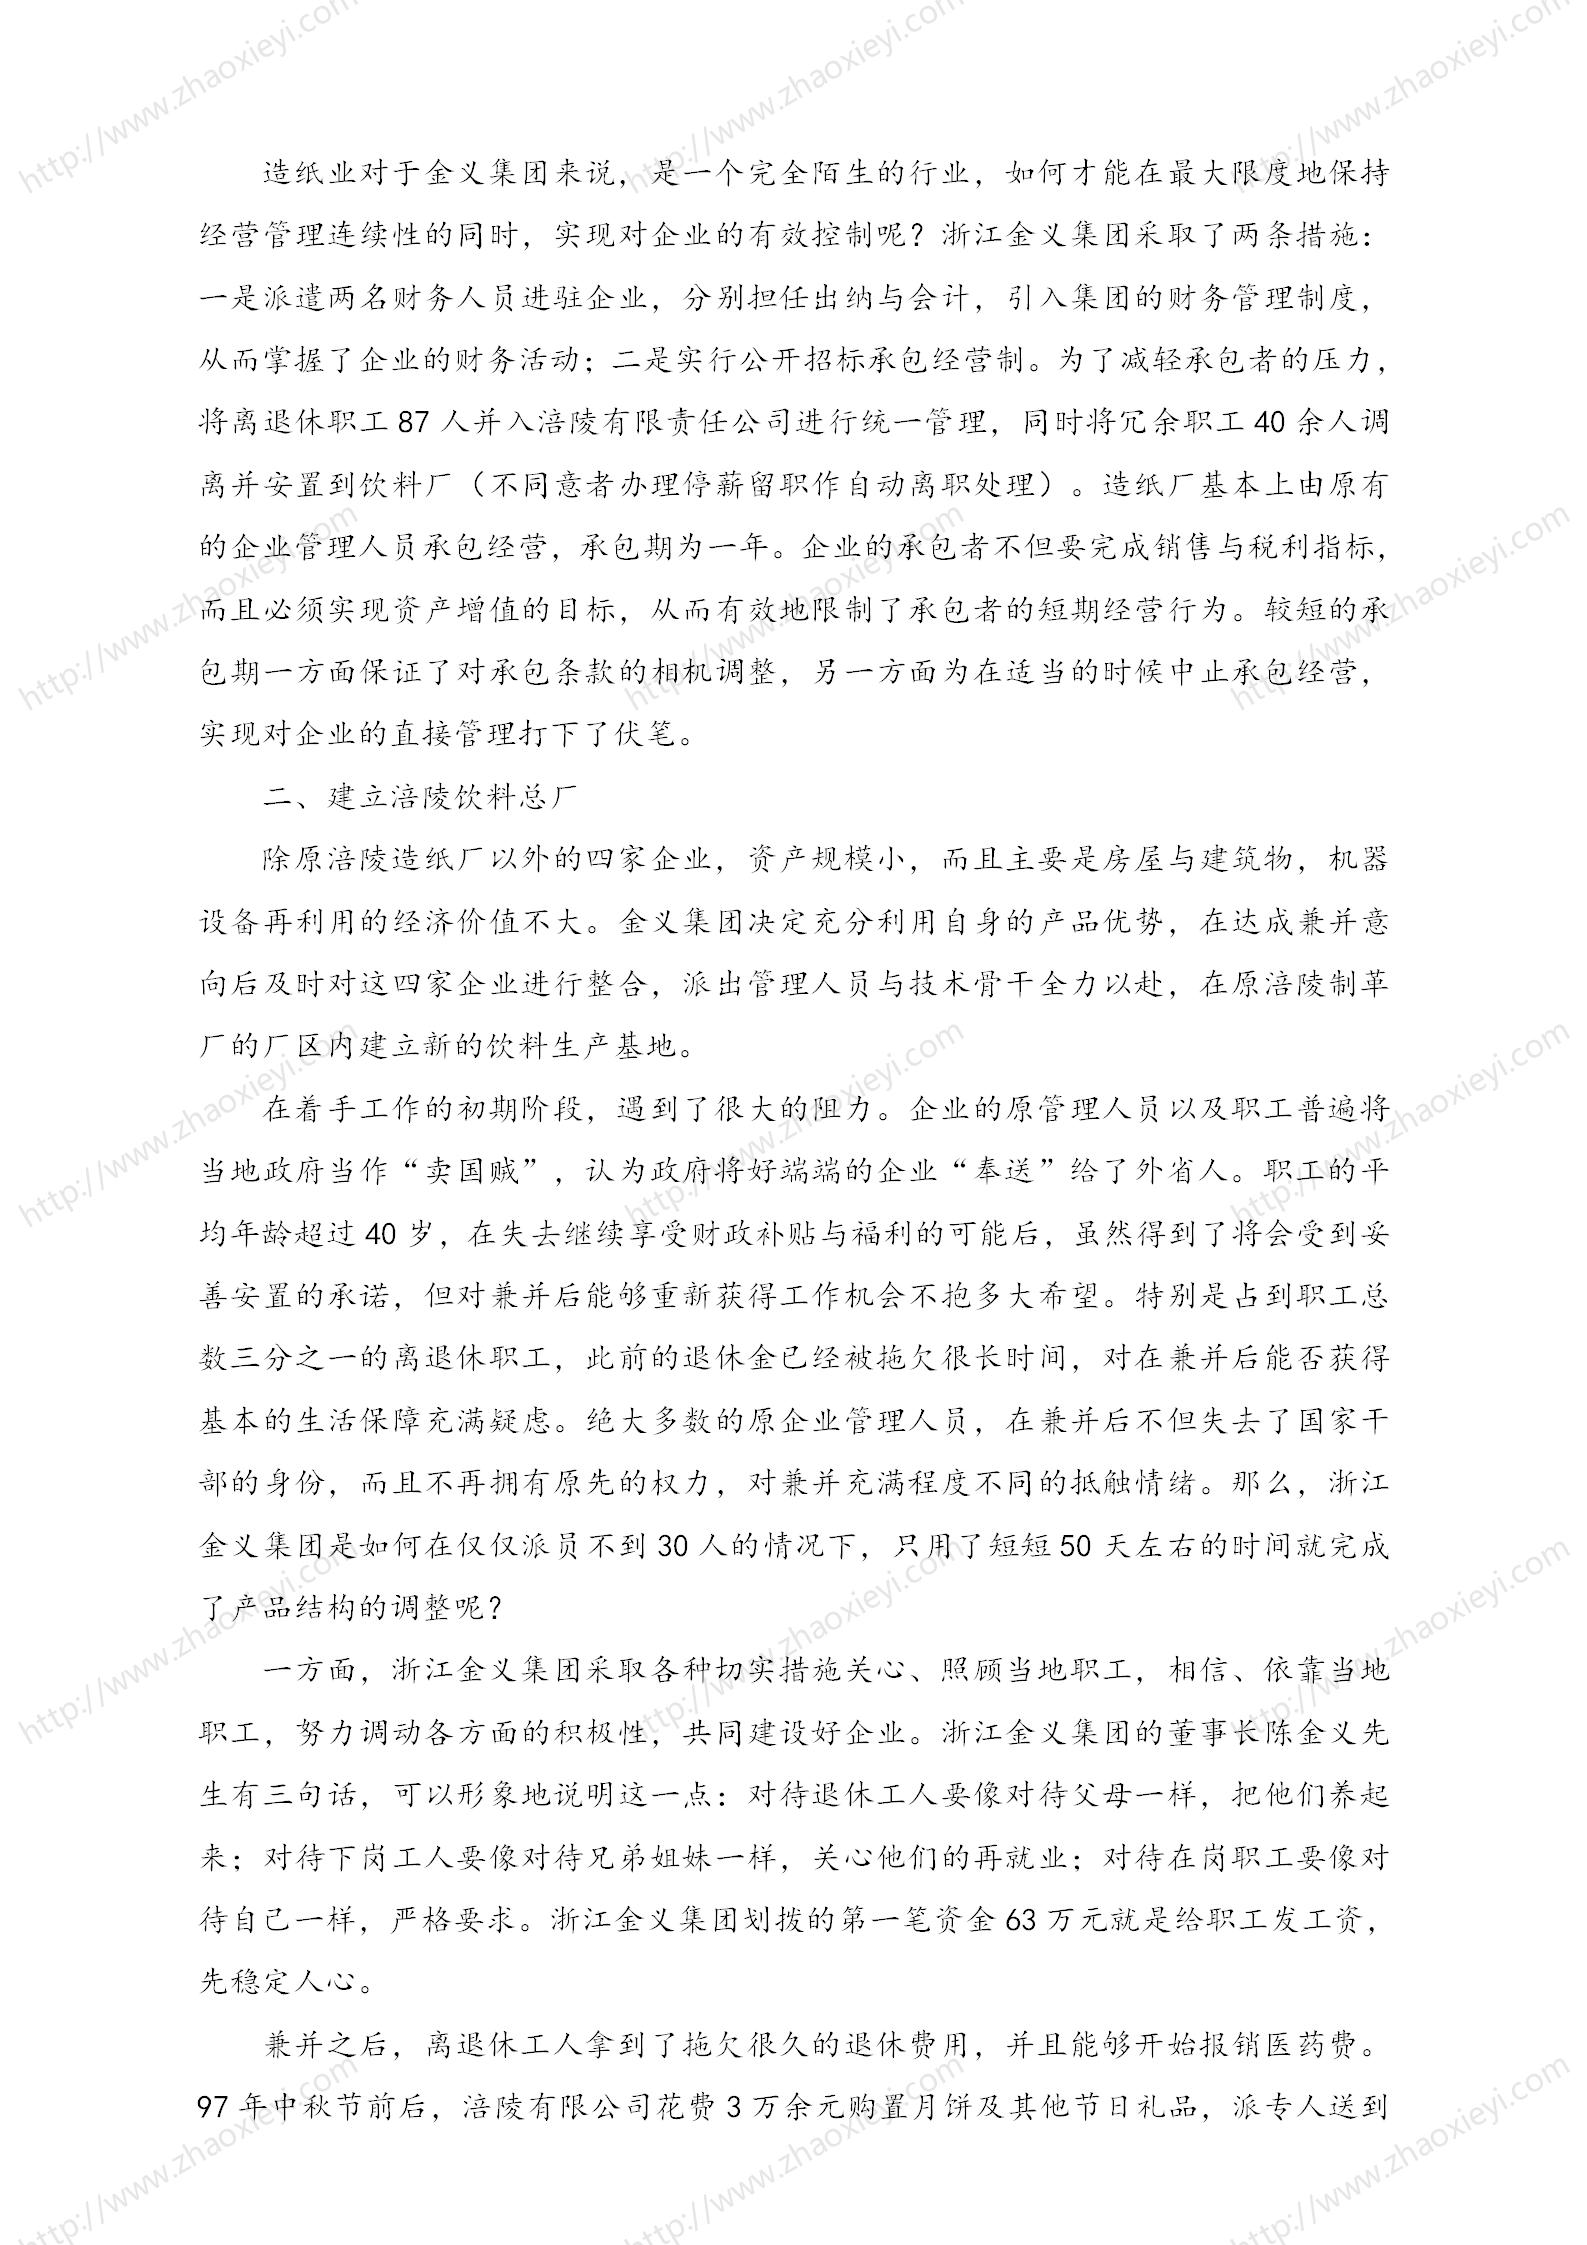 中国企业并购经典案例_128.jpg